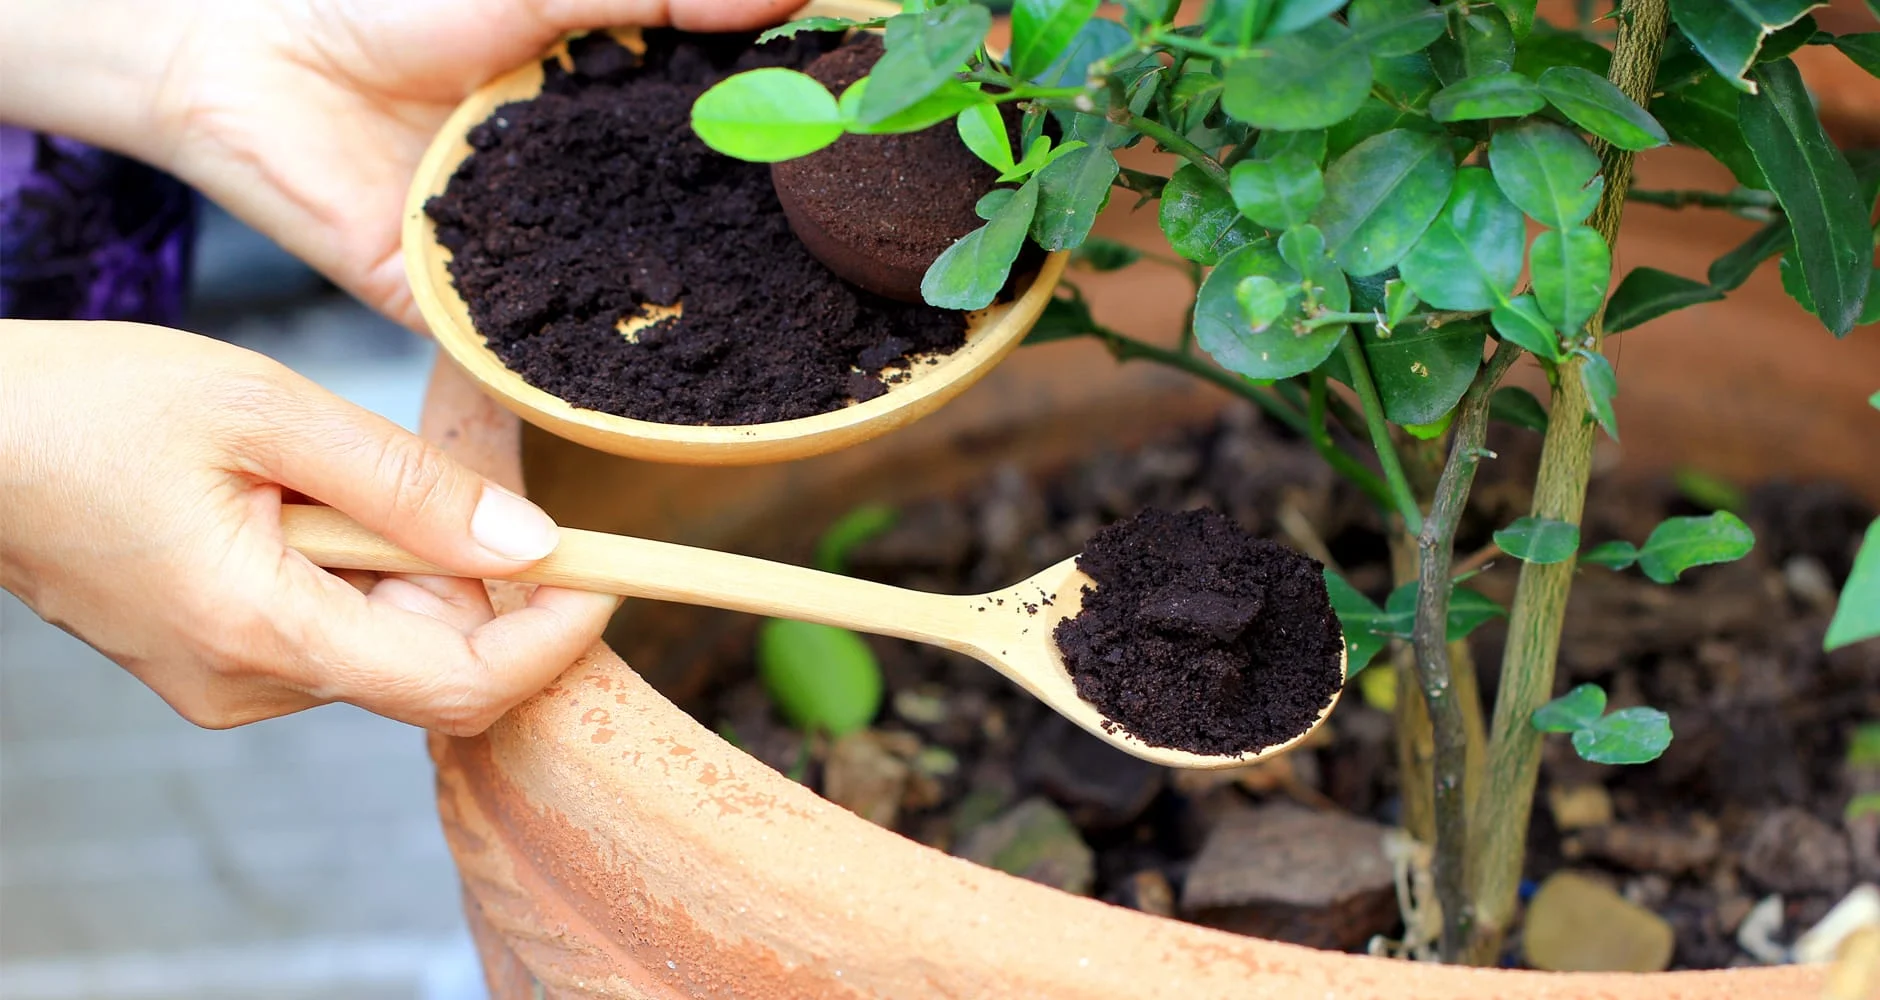 Bã cà phê có rất nhiều công dụng , nhưng một trong những công dụng tốt nhất của chúng là làm phân bón trong vườn. Nhiều loại cây, chẳng hạn như quả việt quất, cây đỗ quyên, hoa hồng và cà chua, phát triển tốt nhất trong đất chua. Tái chế bã cà phê của bạn để giúp khử chua đất của bạn. Có một số cách để làm điều này - bạn có thể phủ lớp trên bằng cách rắc bã đã qua sử dụng lên bề mặt đất, hoặc bạn có thể pha “cà phê” để đổ lên vườn của mình. Ngâm tối đa sáu tách bã cà phê đã qua sử dụng trong tối đa một tuần để pha cà phê sân vườn, sau đó dùng nó để tưới các loại cây ưa axit của bạn.